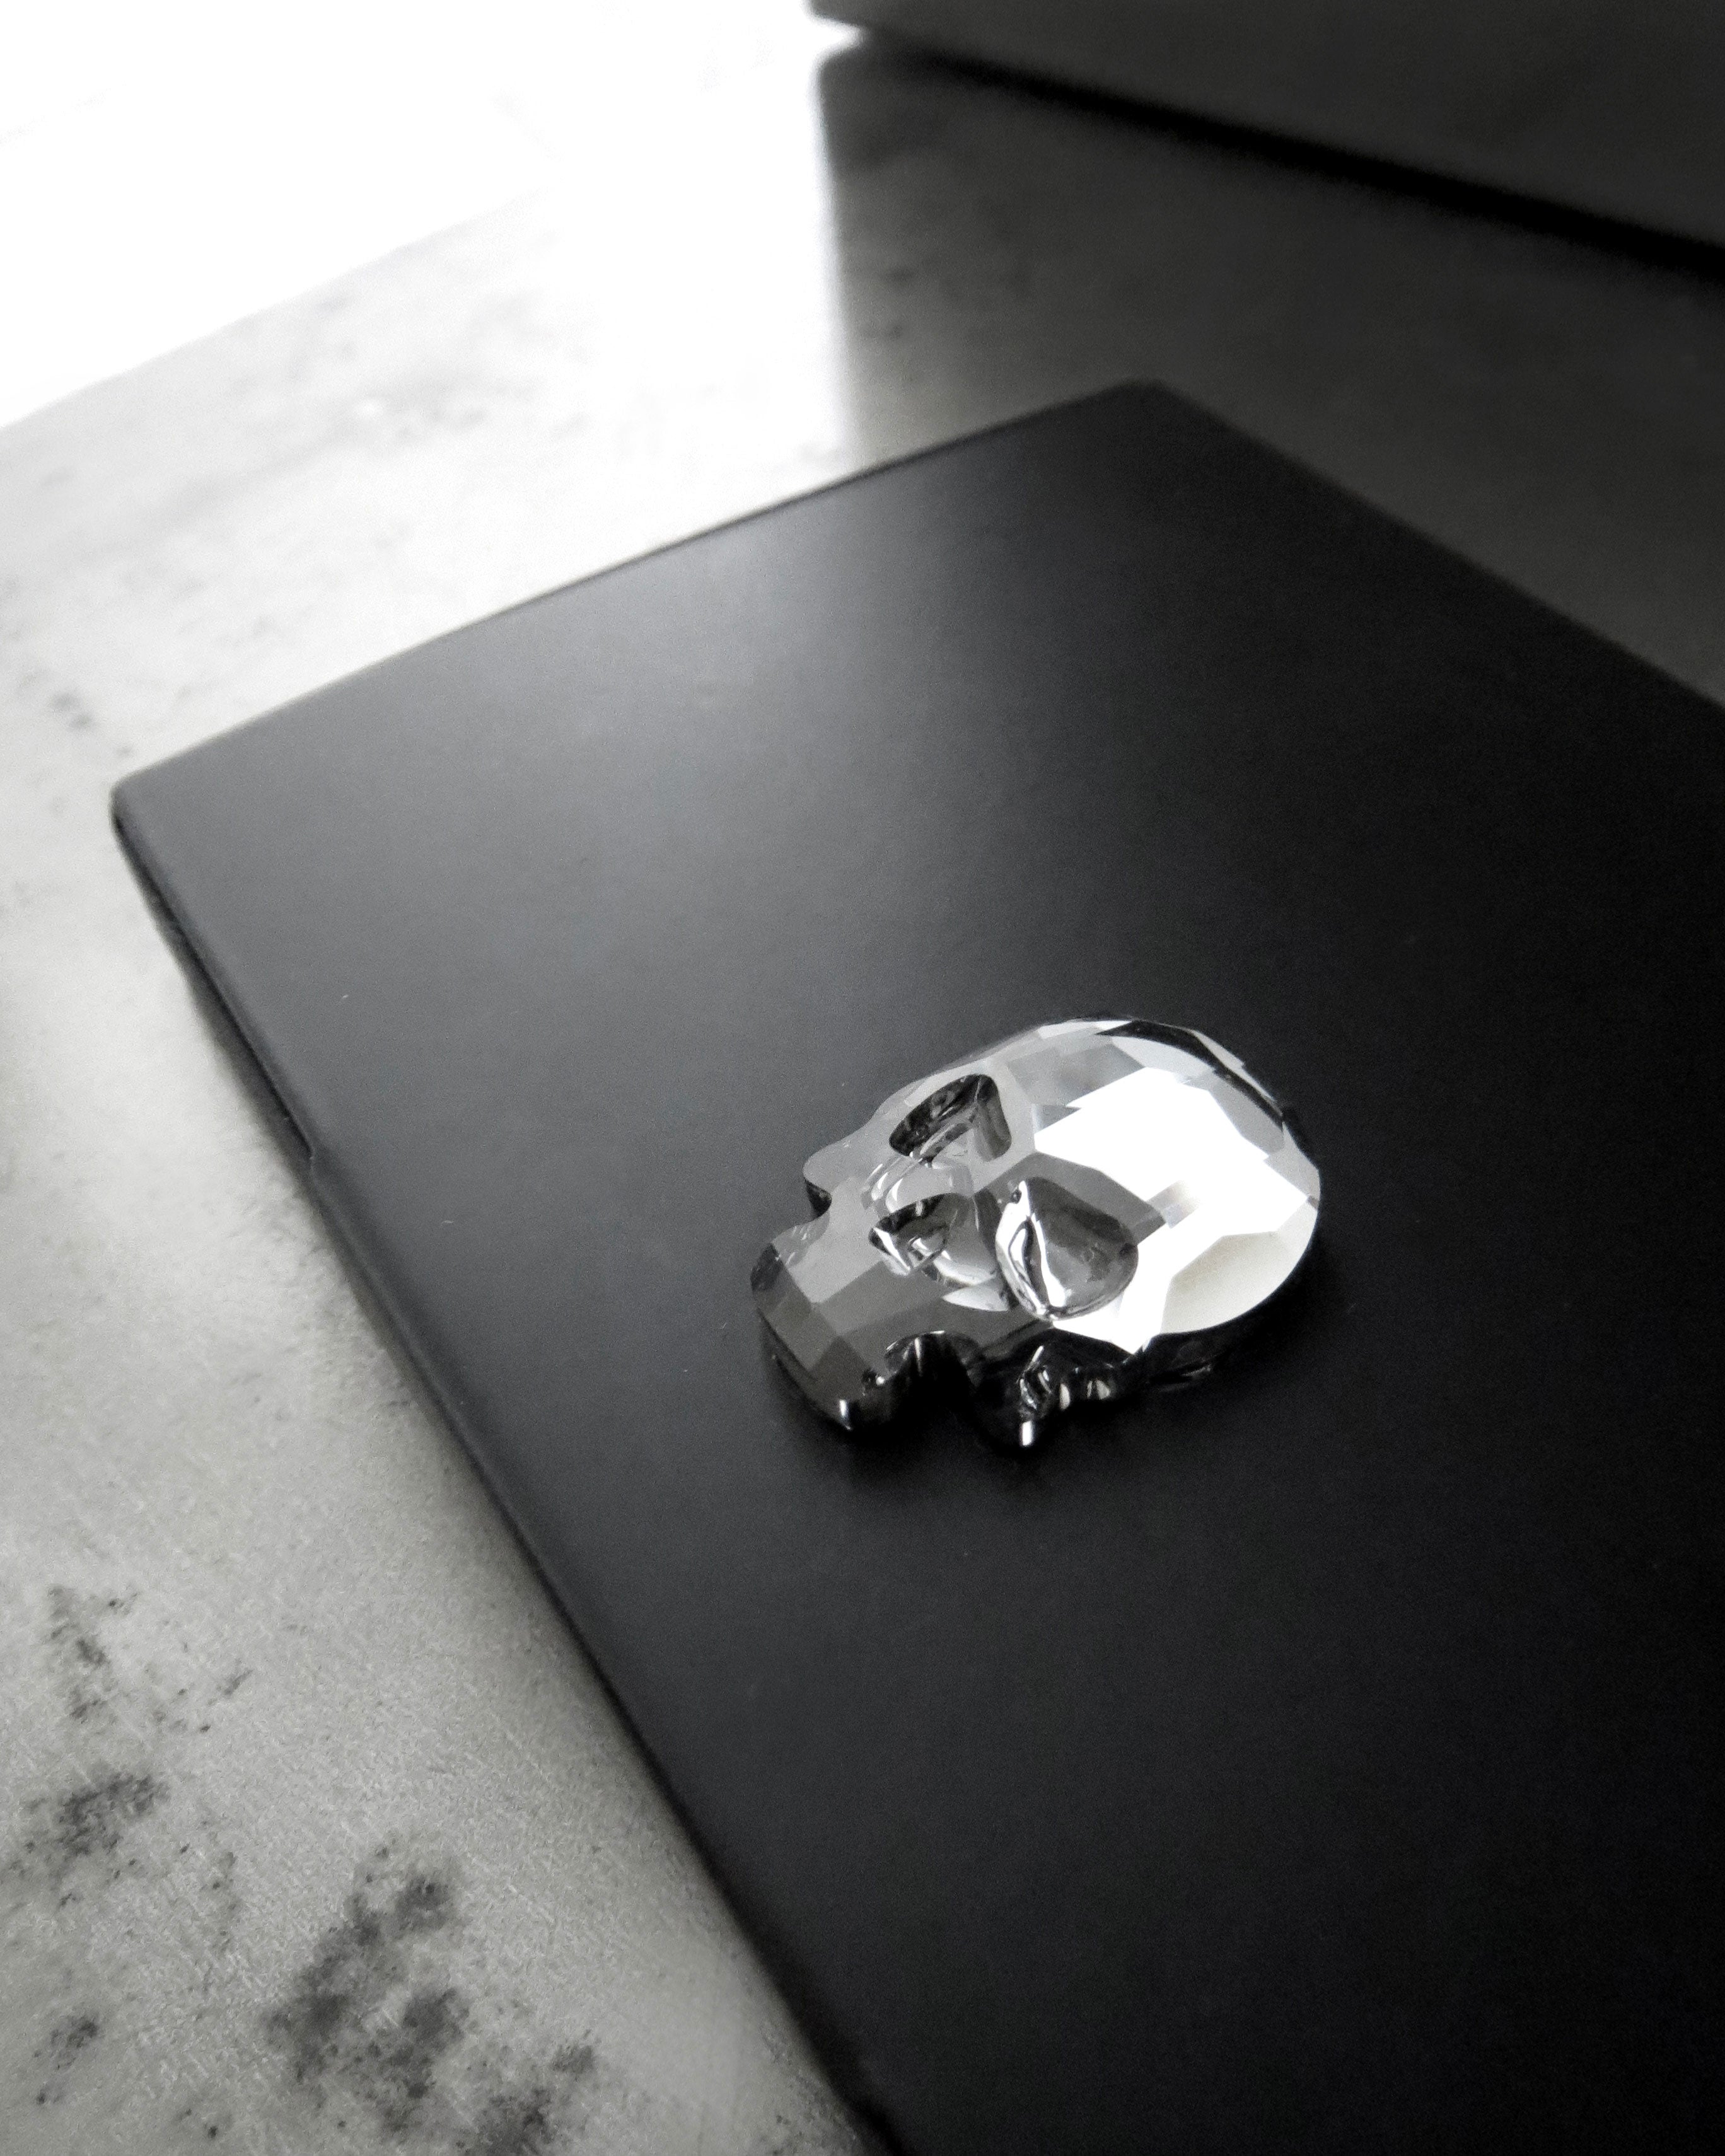 Crystal Skull Business Card Holder - Matte Black Metal Case